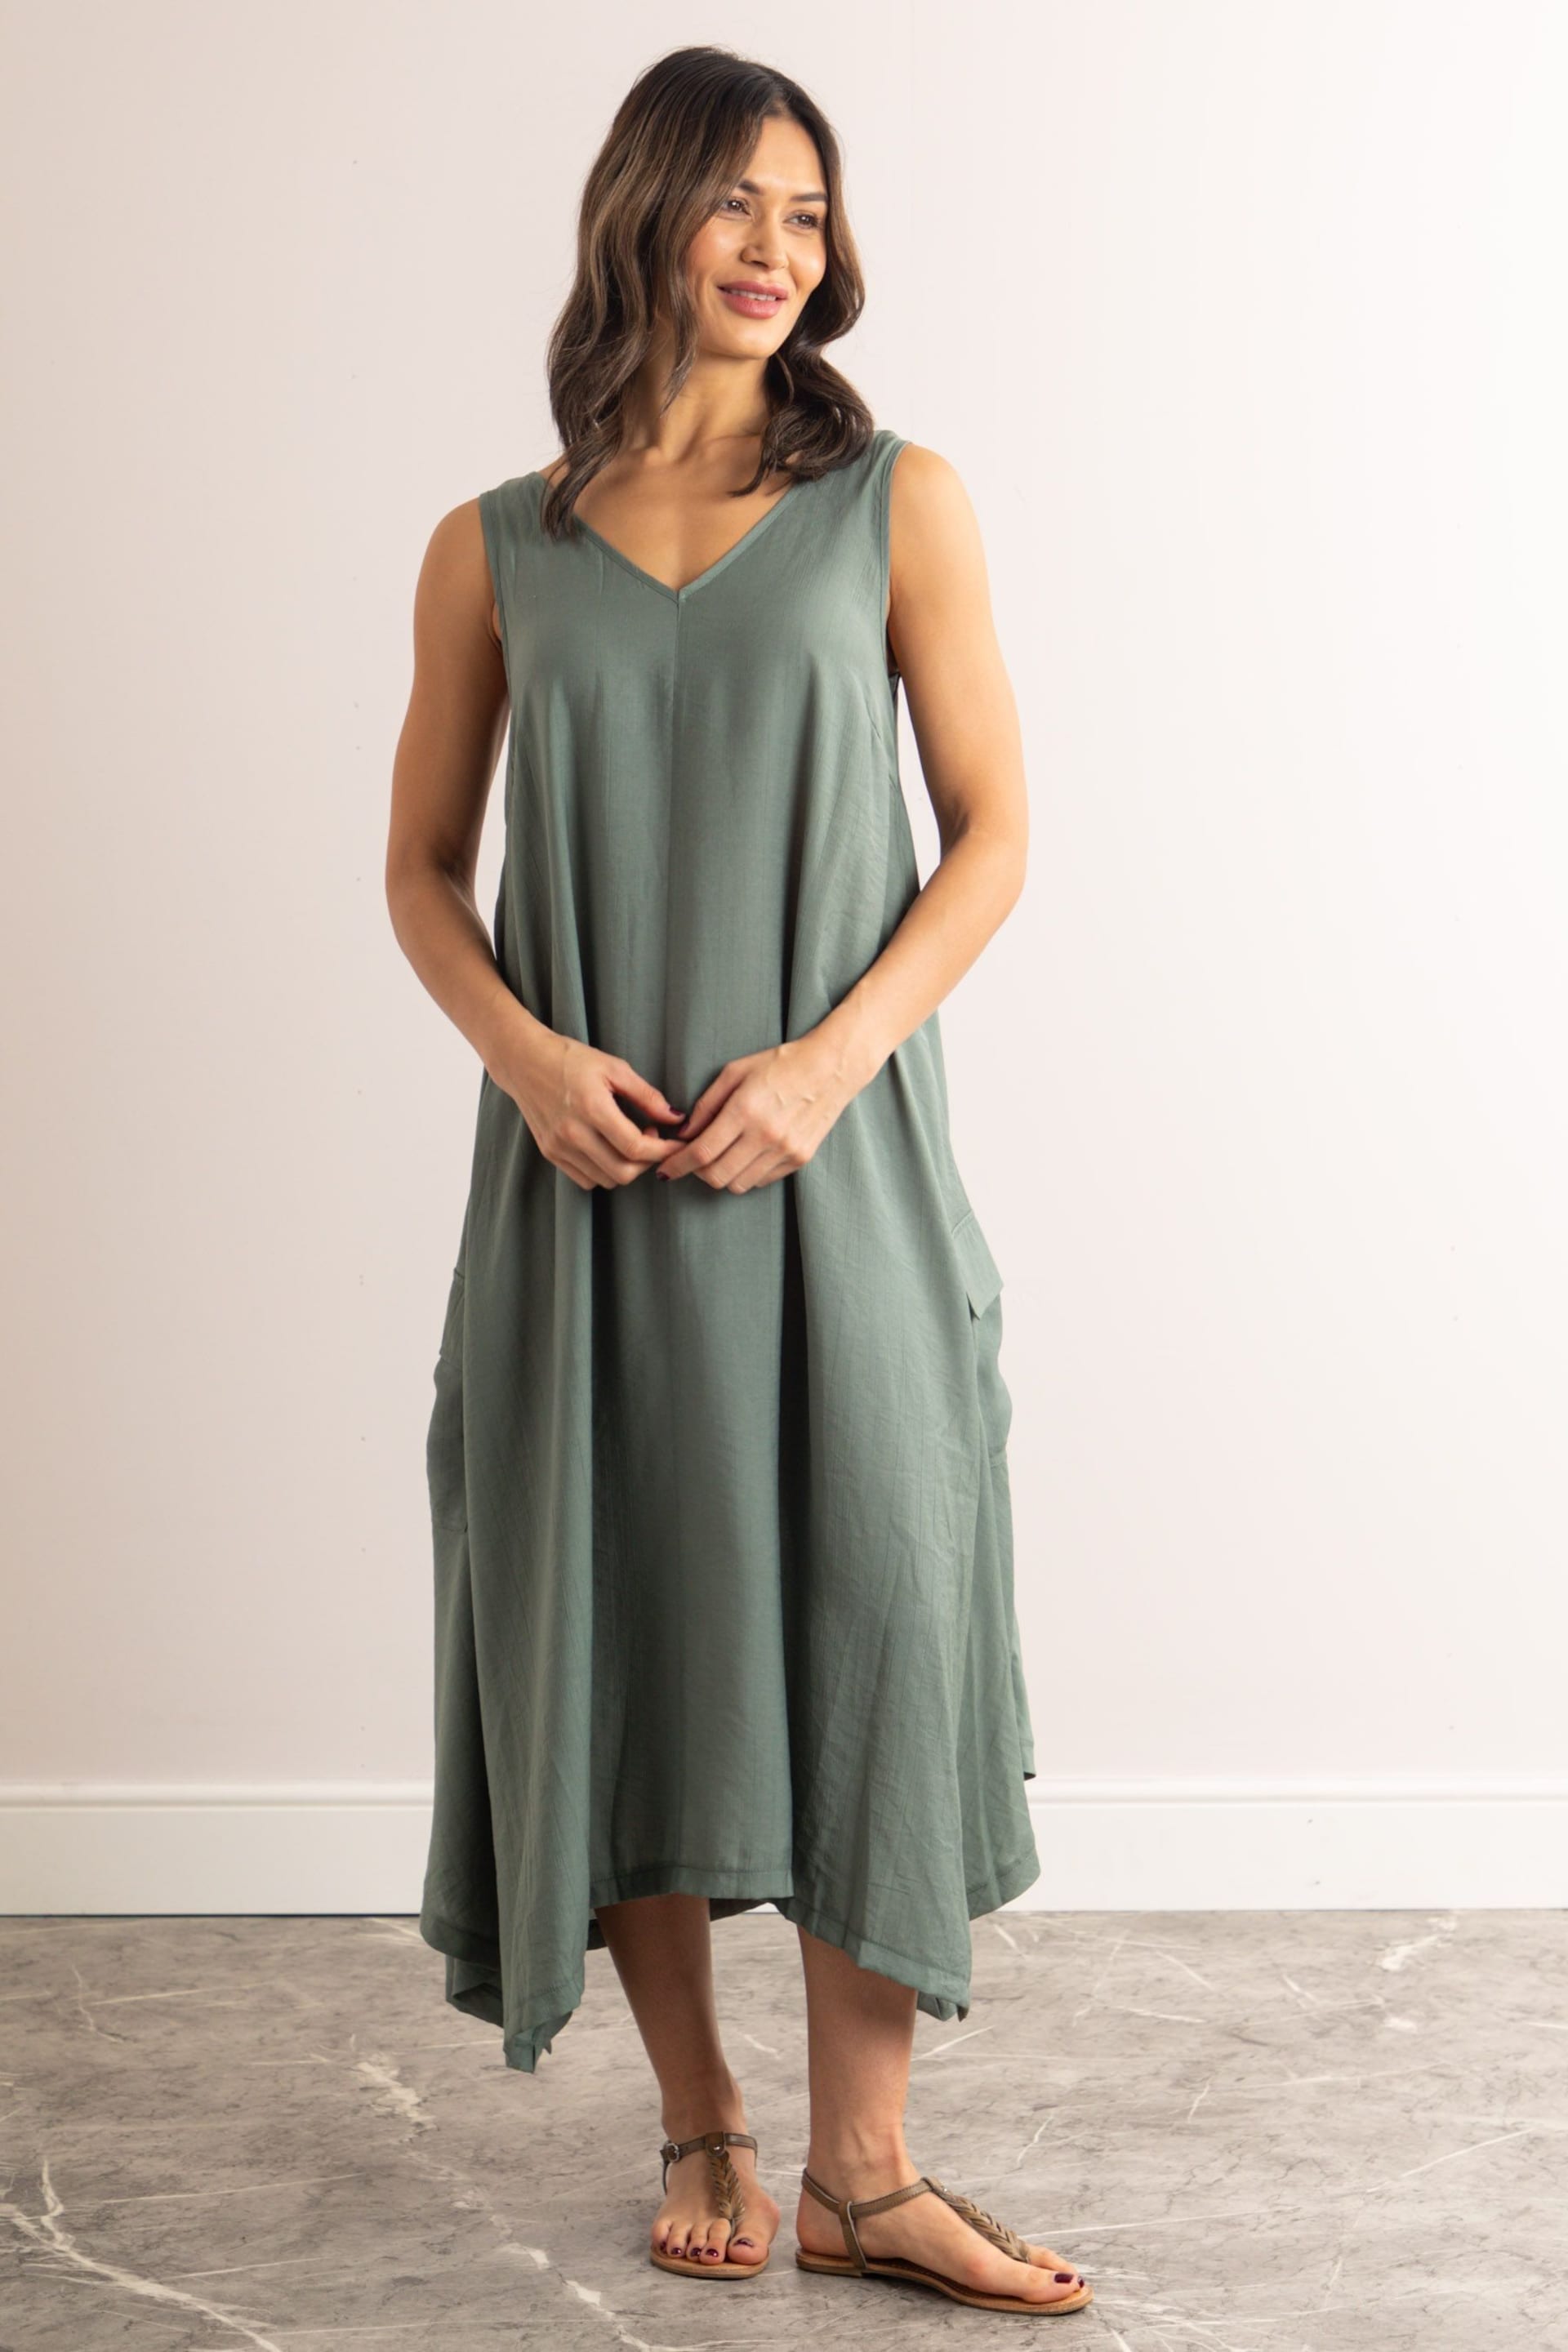 Lakeland Clothing Hollie V-Neck Sleeveless Maxi Dress - Image 2 of 3